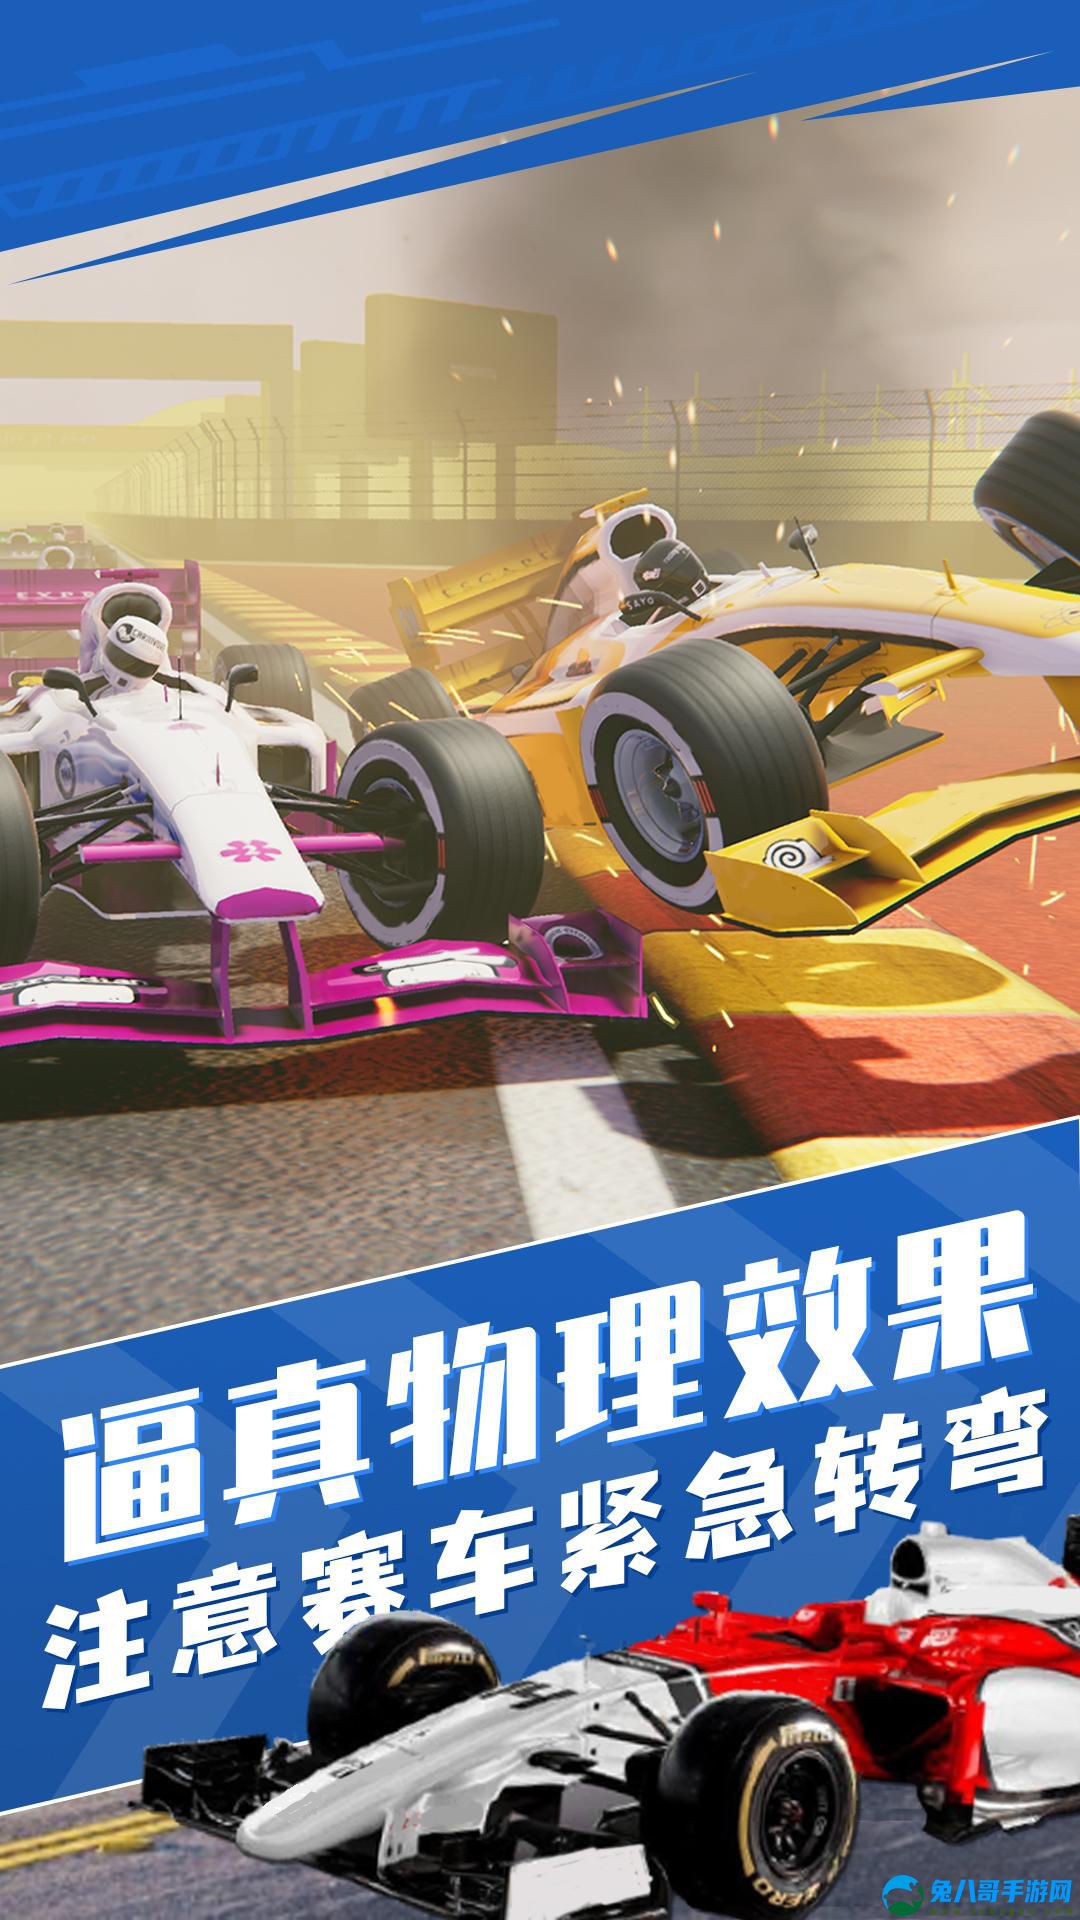 真实狂飙赛车模拟游戏下载手机版 v1.0